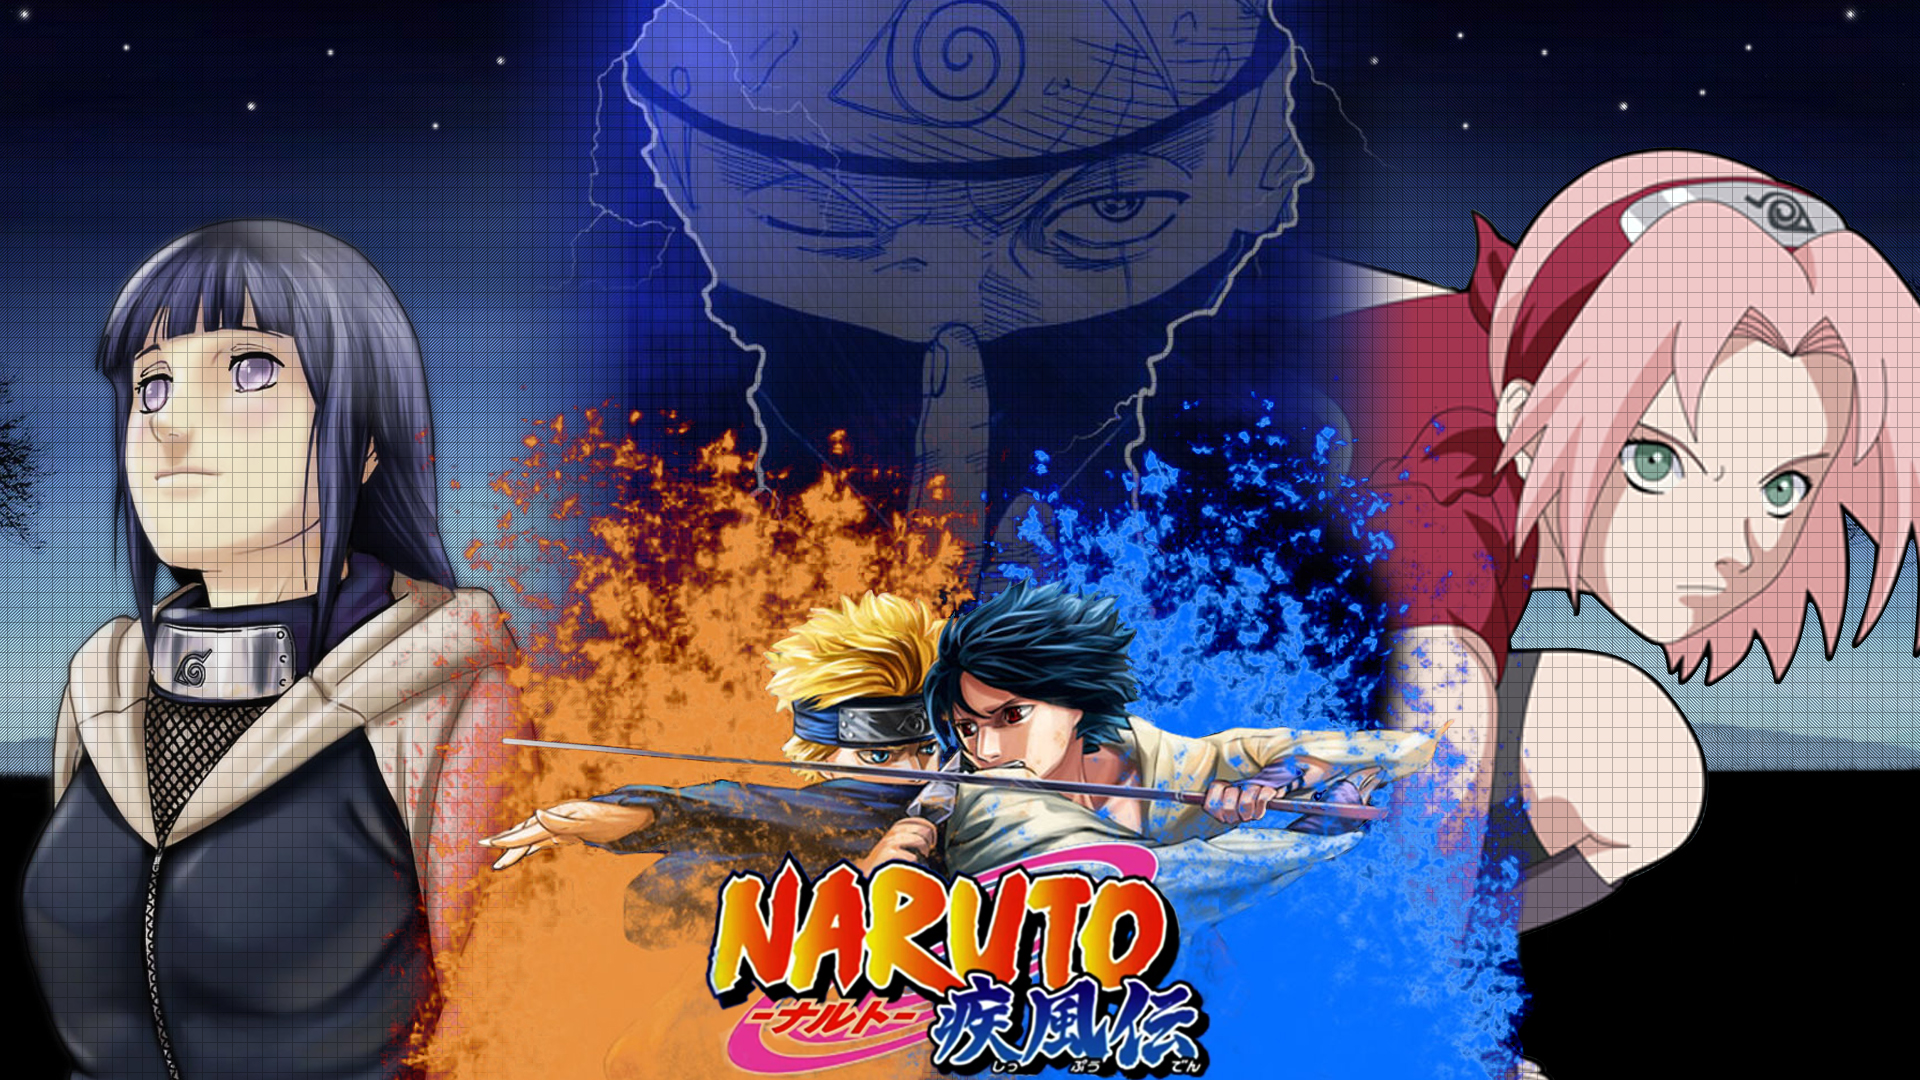 Naruto and his friends, including Kakashi, Sakura, Sasuke, and Hinata, with Sharingan.